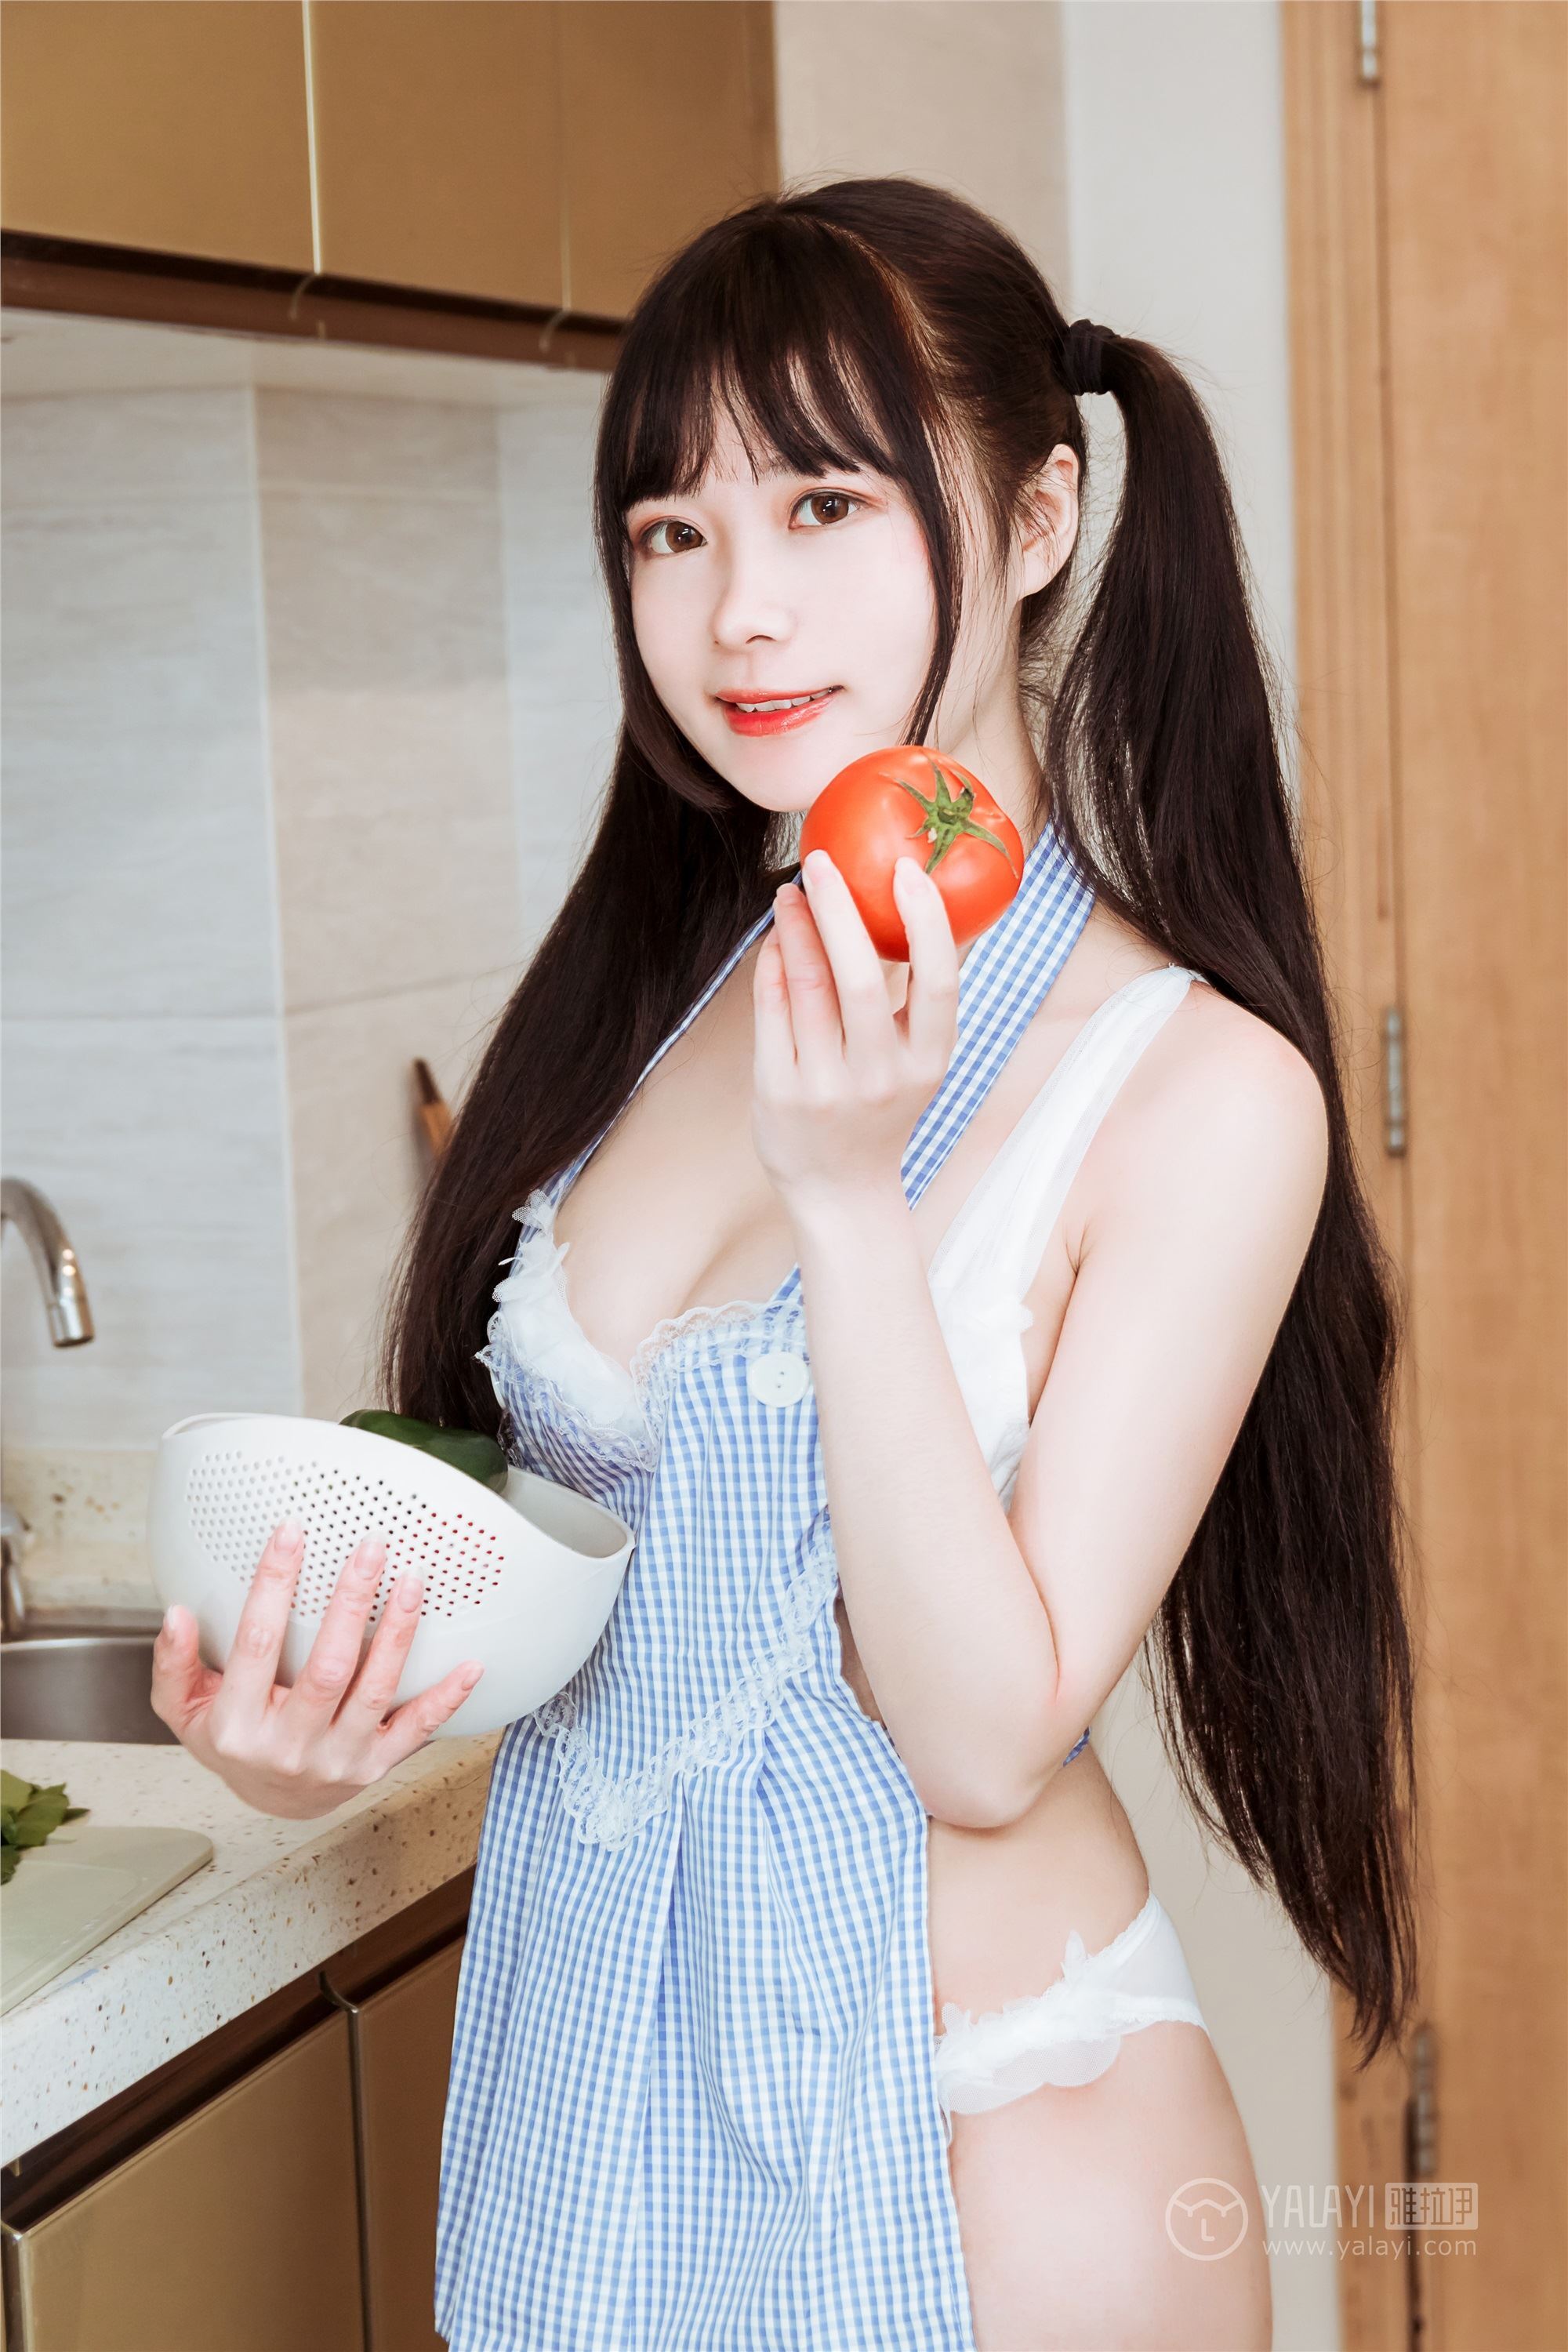 Yalayi yalayi 2019.03.06 No.204 delicious cook Xiaoliu